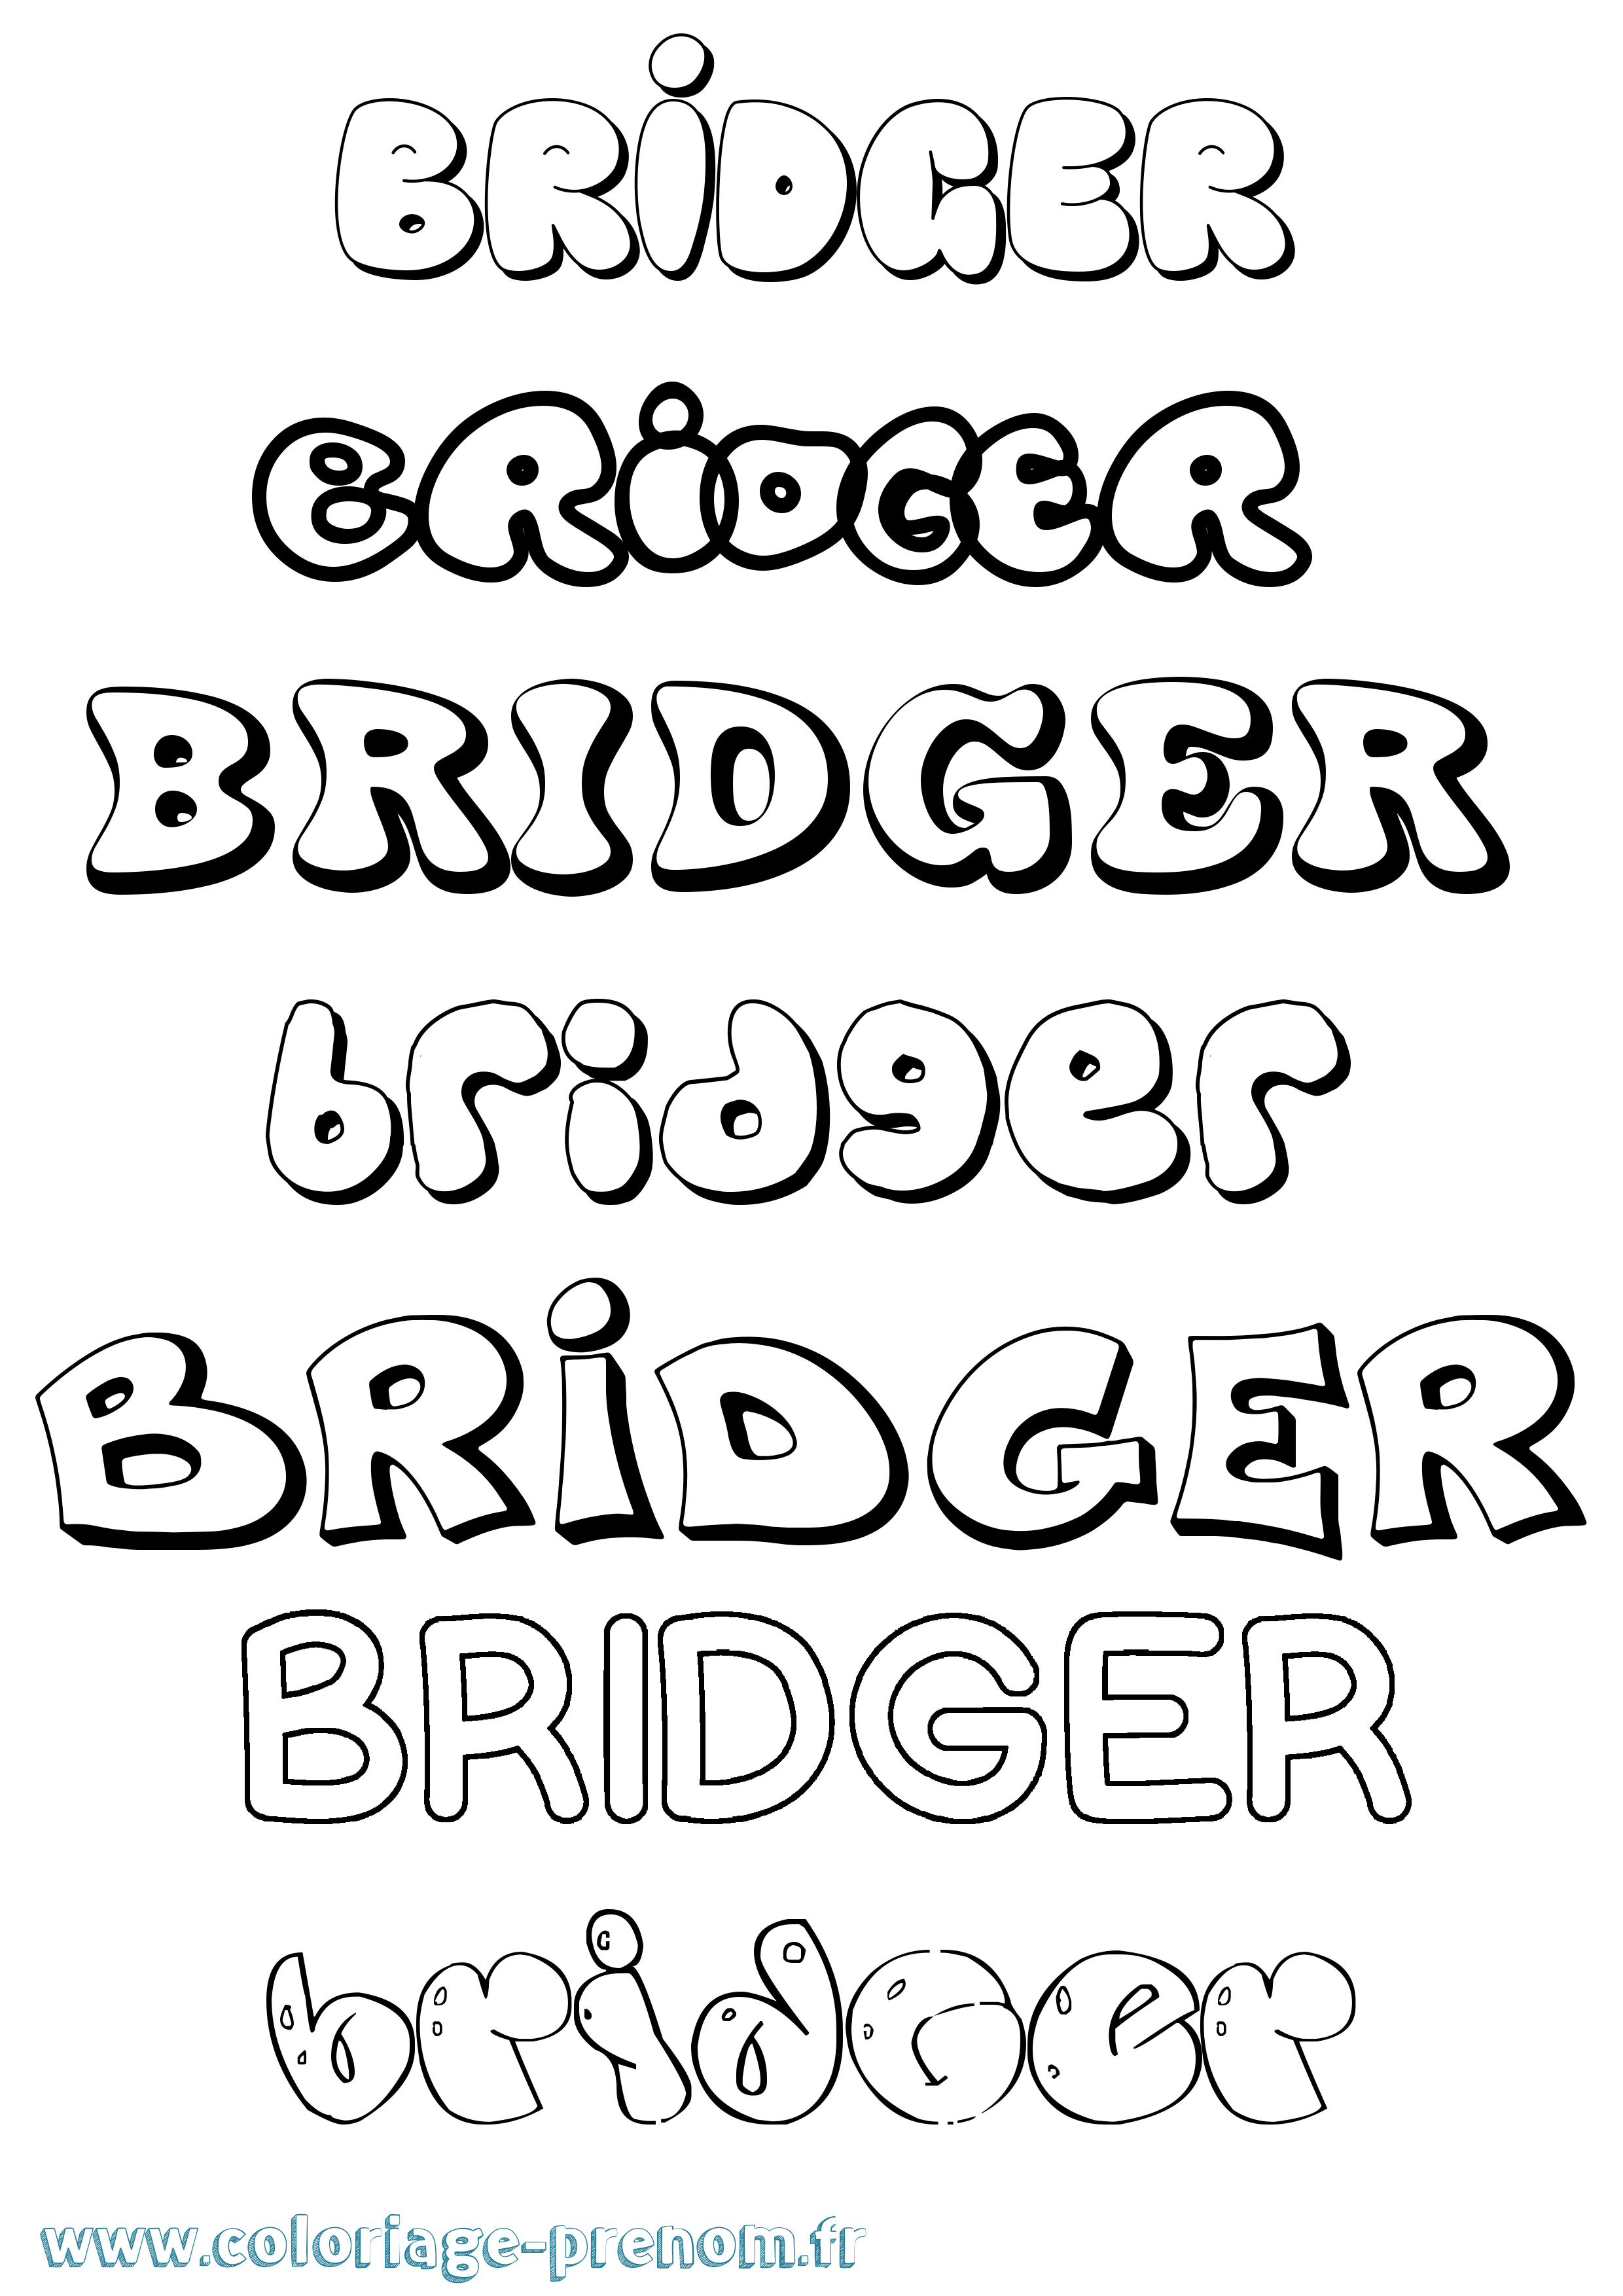 Coloriage prénom Bridger Bubble